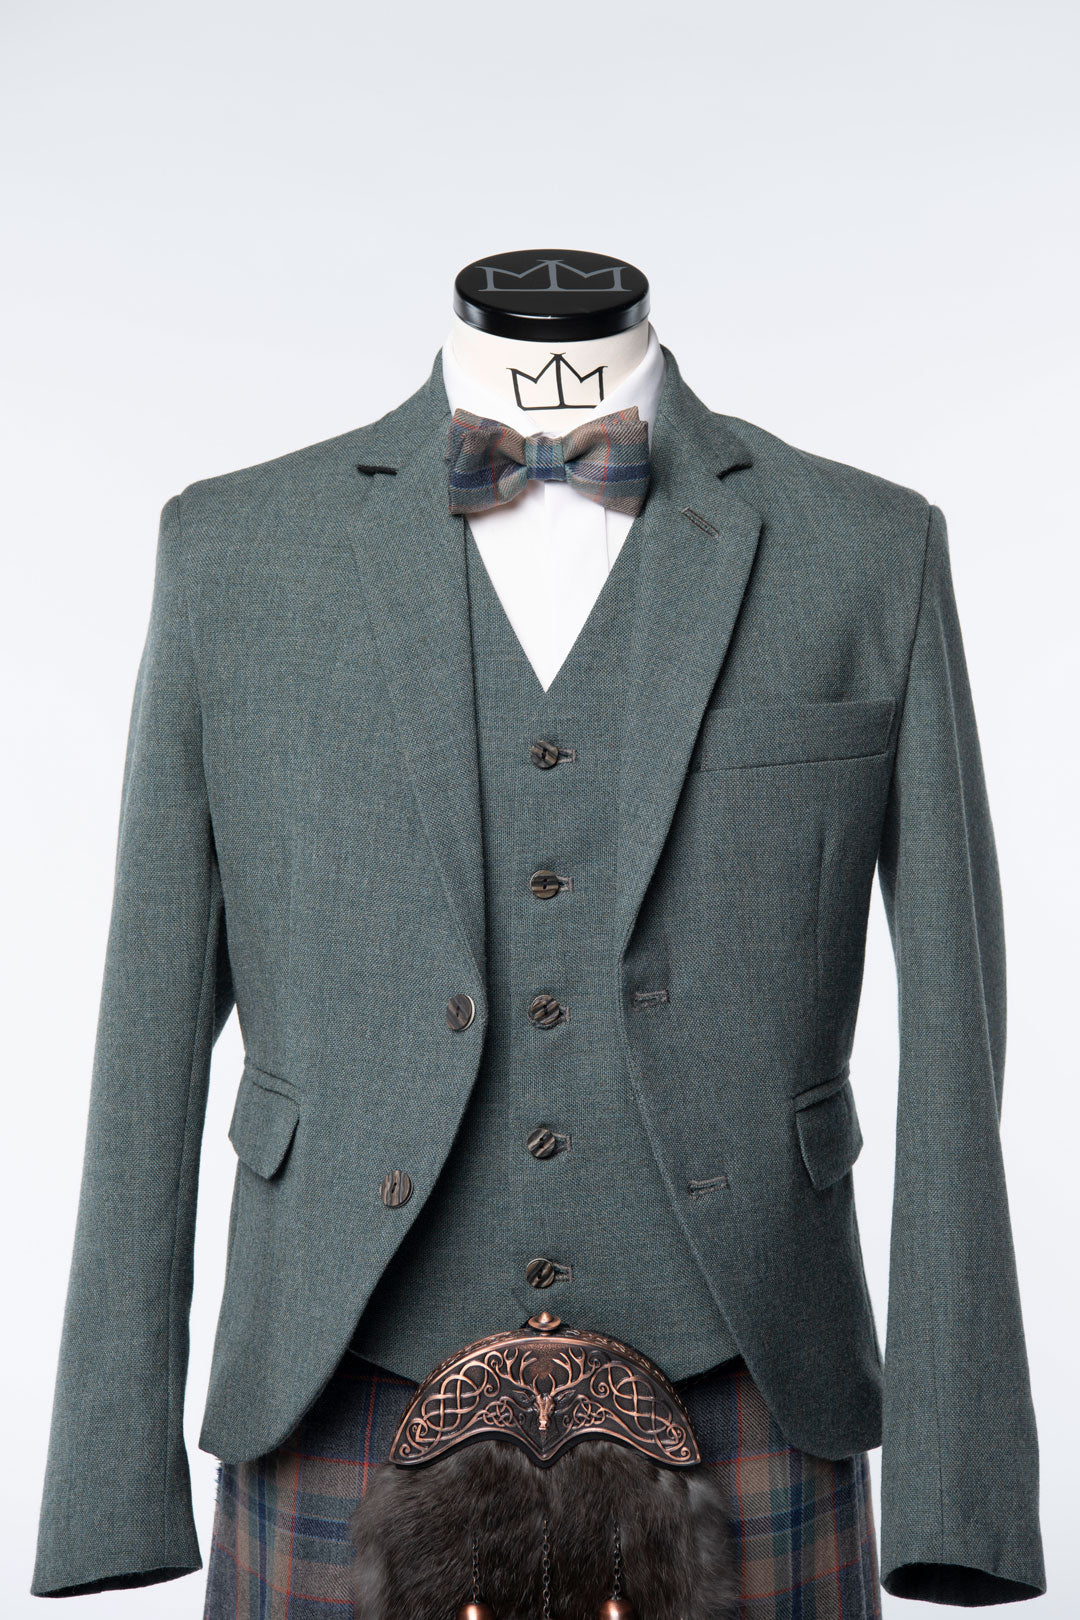 Tarbert Tweed Kilt Jacket and Waistcoat - MacGregor and MacDuff